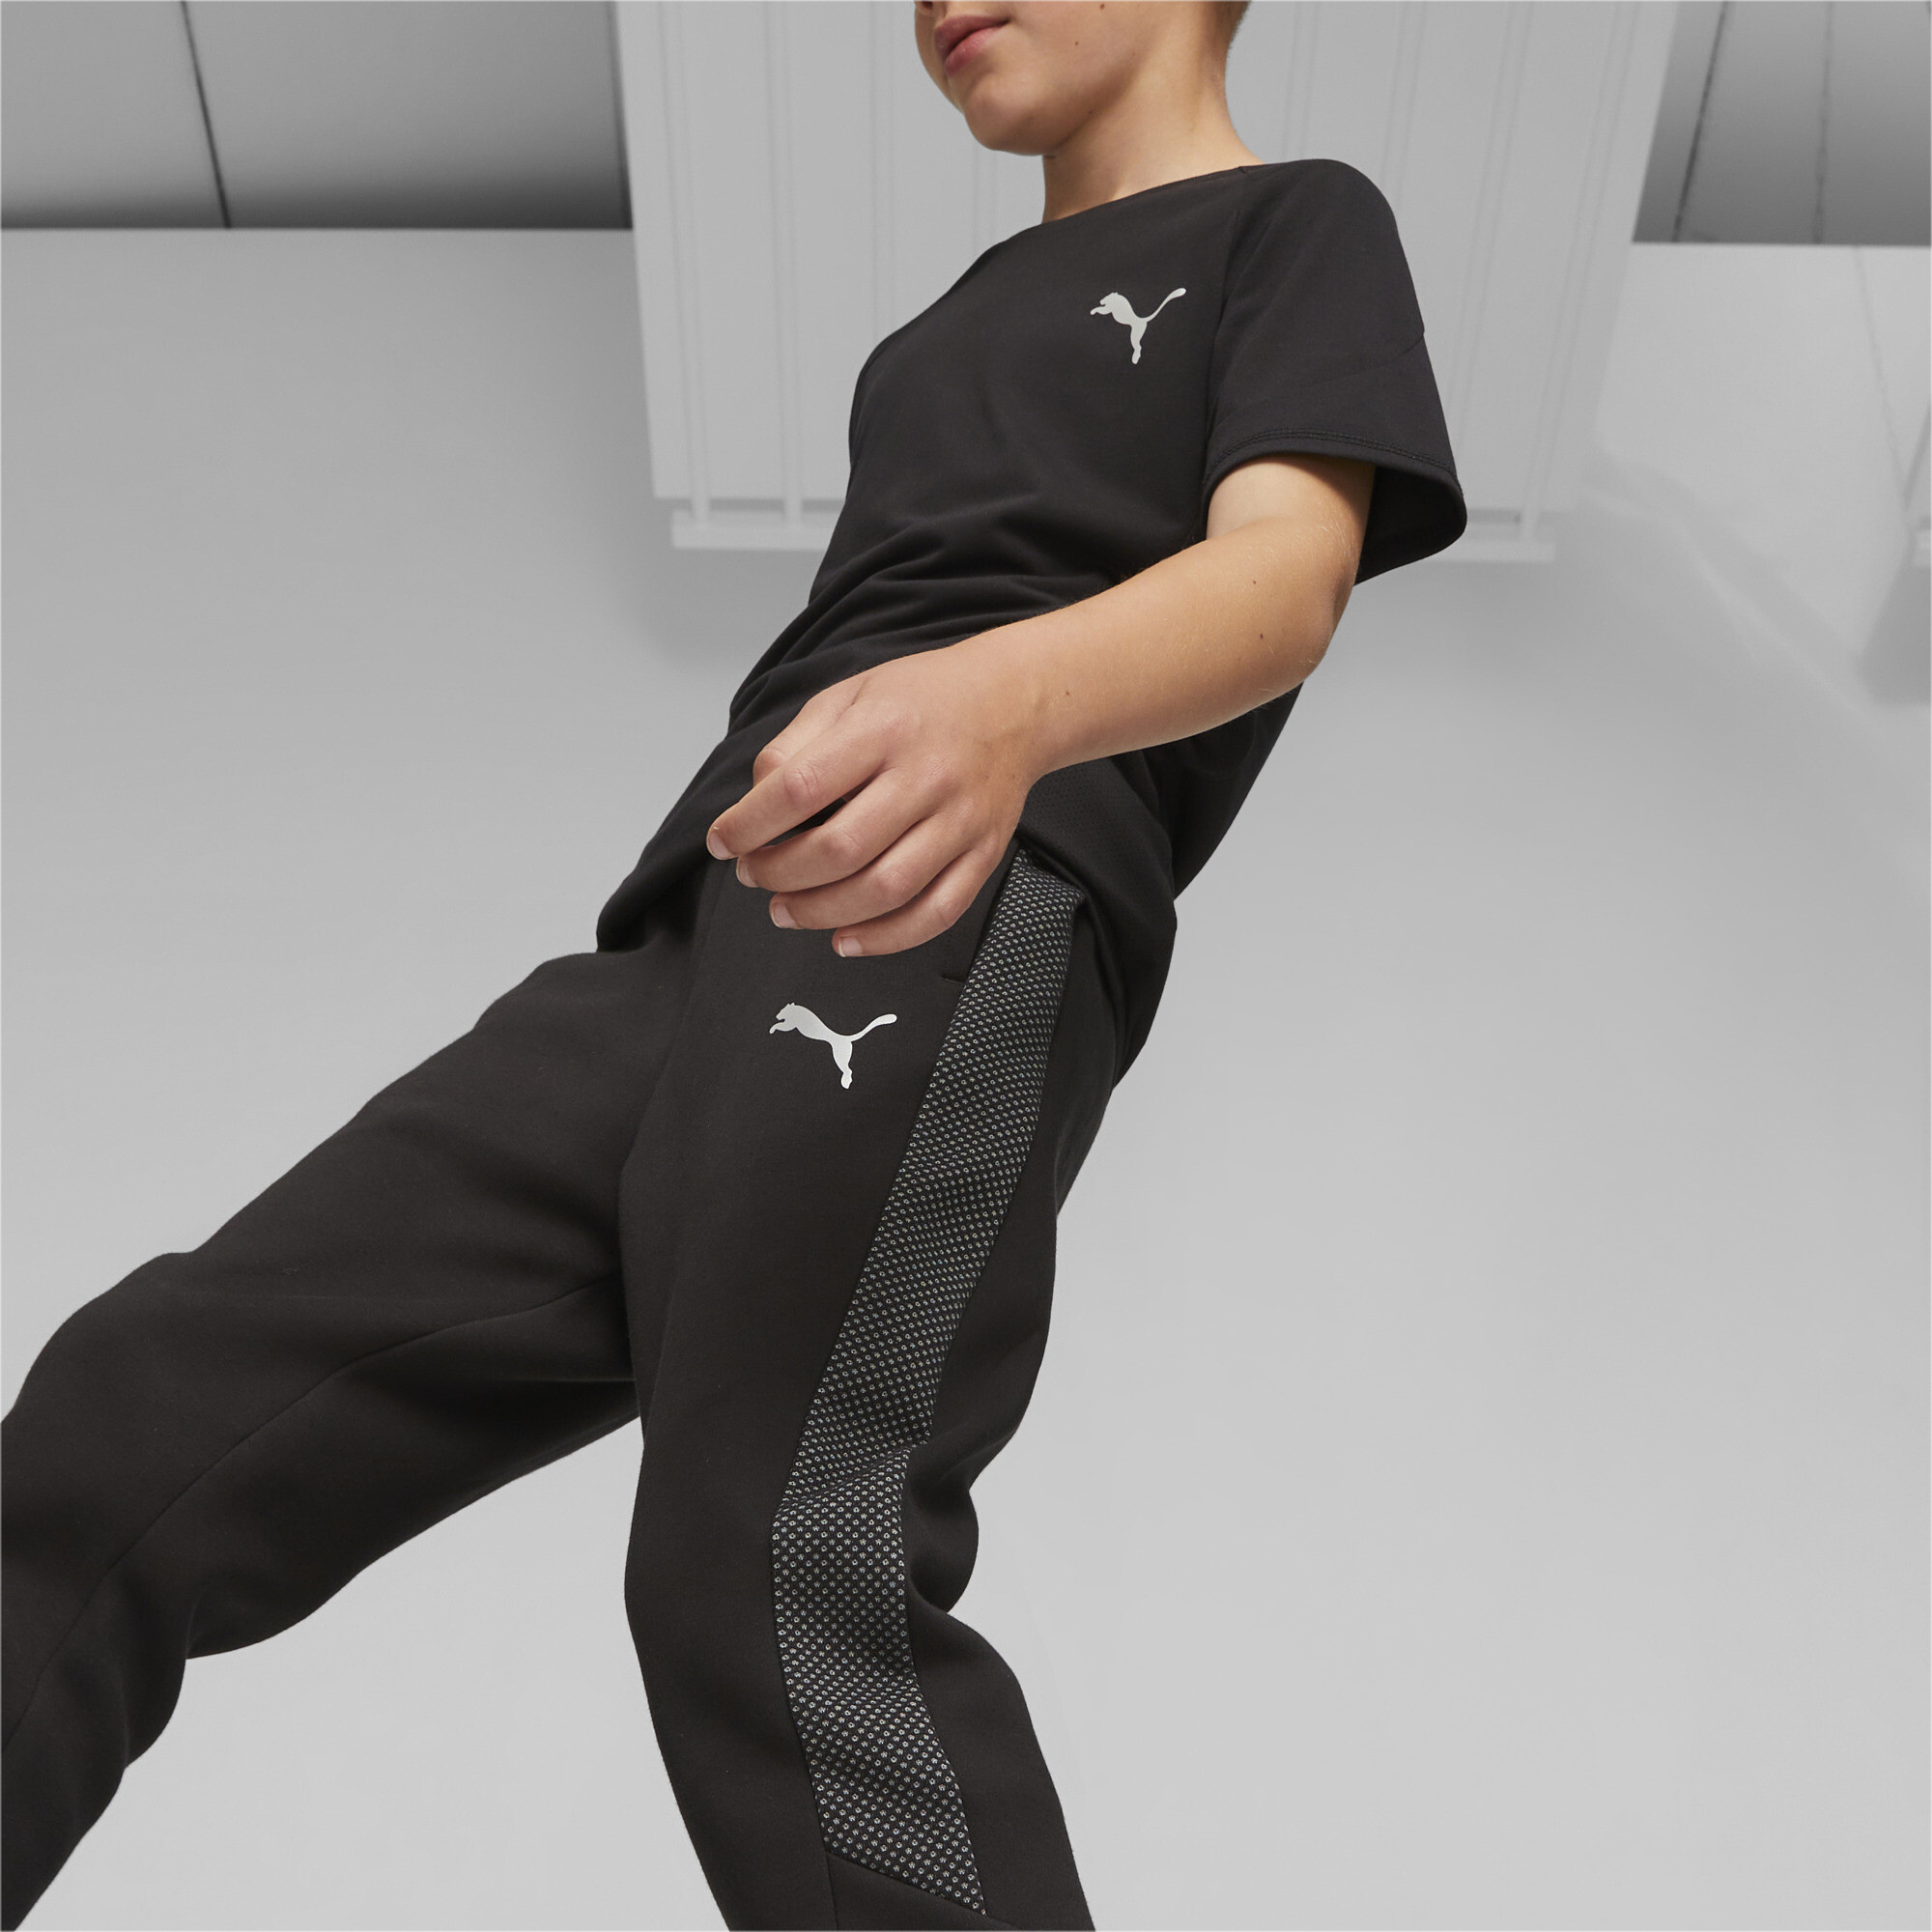 PUMA Evostripe Sweatpants In Black, Size 5-6 Youth